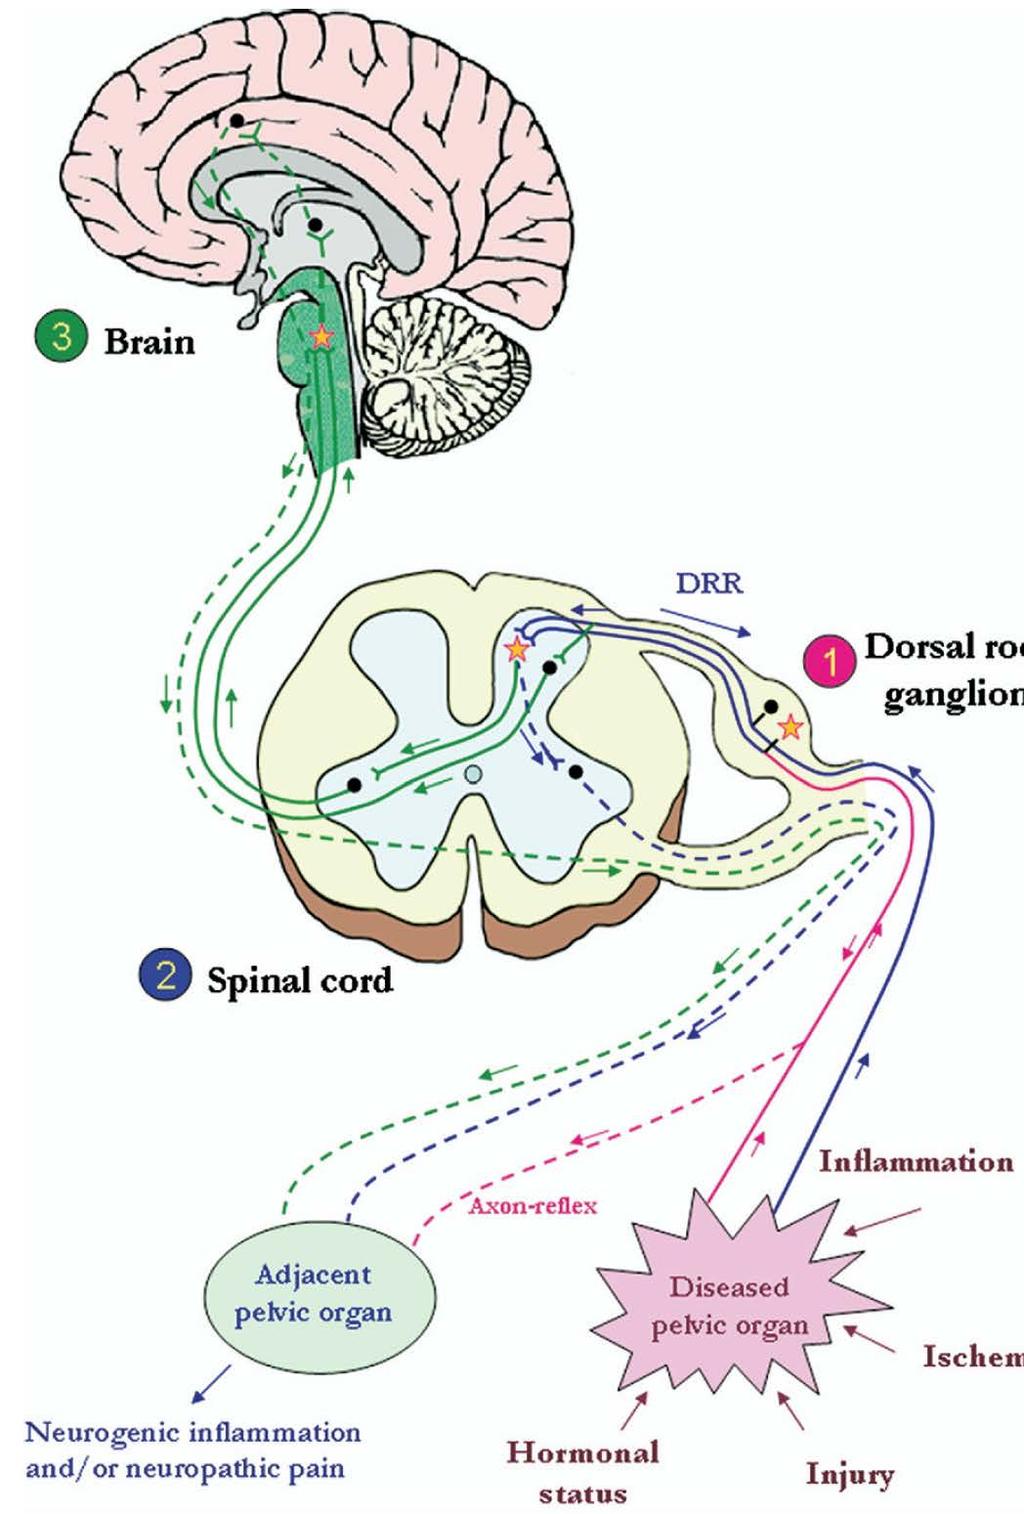 Δομικές αλλαγές κυστικού τοιχώματος - νεύρων Υπάρχει αύξηση του μεγέθους Προσαγωγών νευρώνων στα οπίσθια νωτιαία γάγγλια Αύξηση προσαγωγών ώσεων Αλλοδυνία -